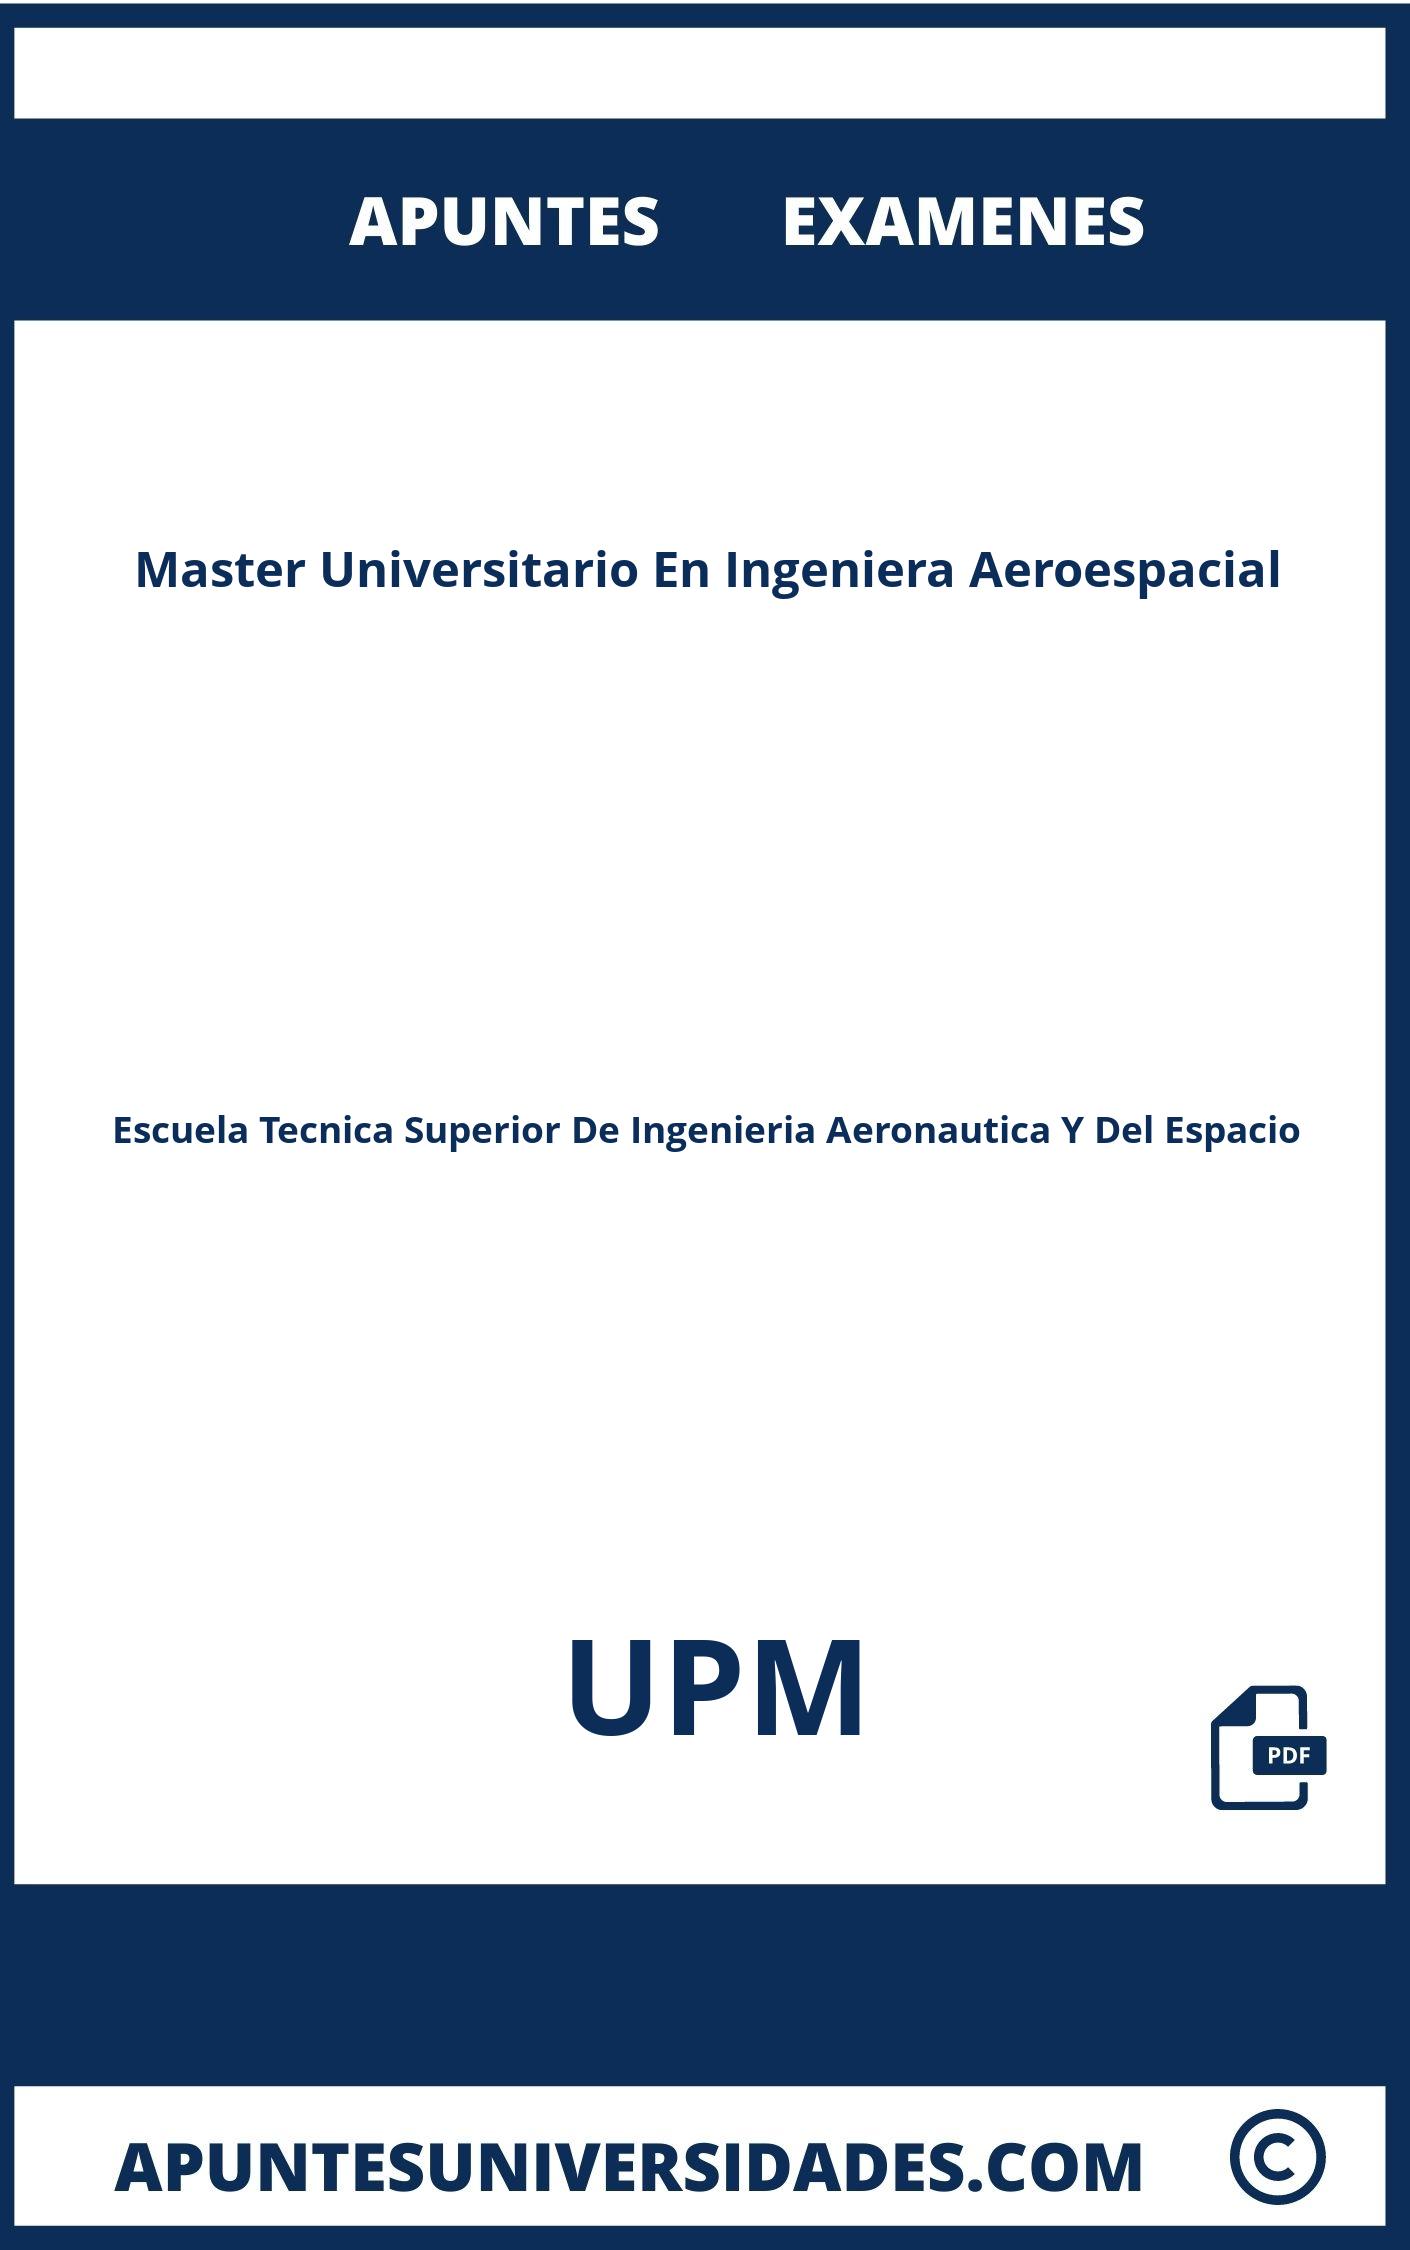 Apuntes y Examenes Master Universitario En Ingeniera Aeroespacial UPM